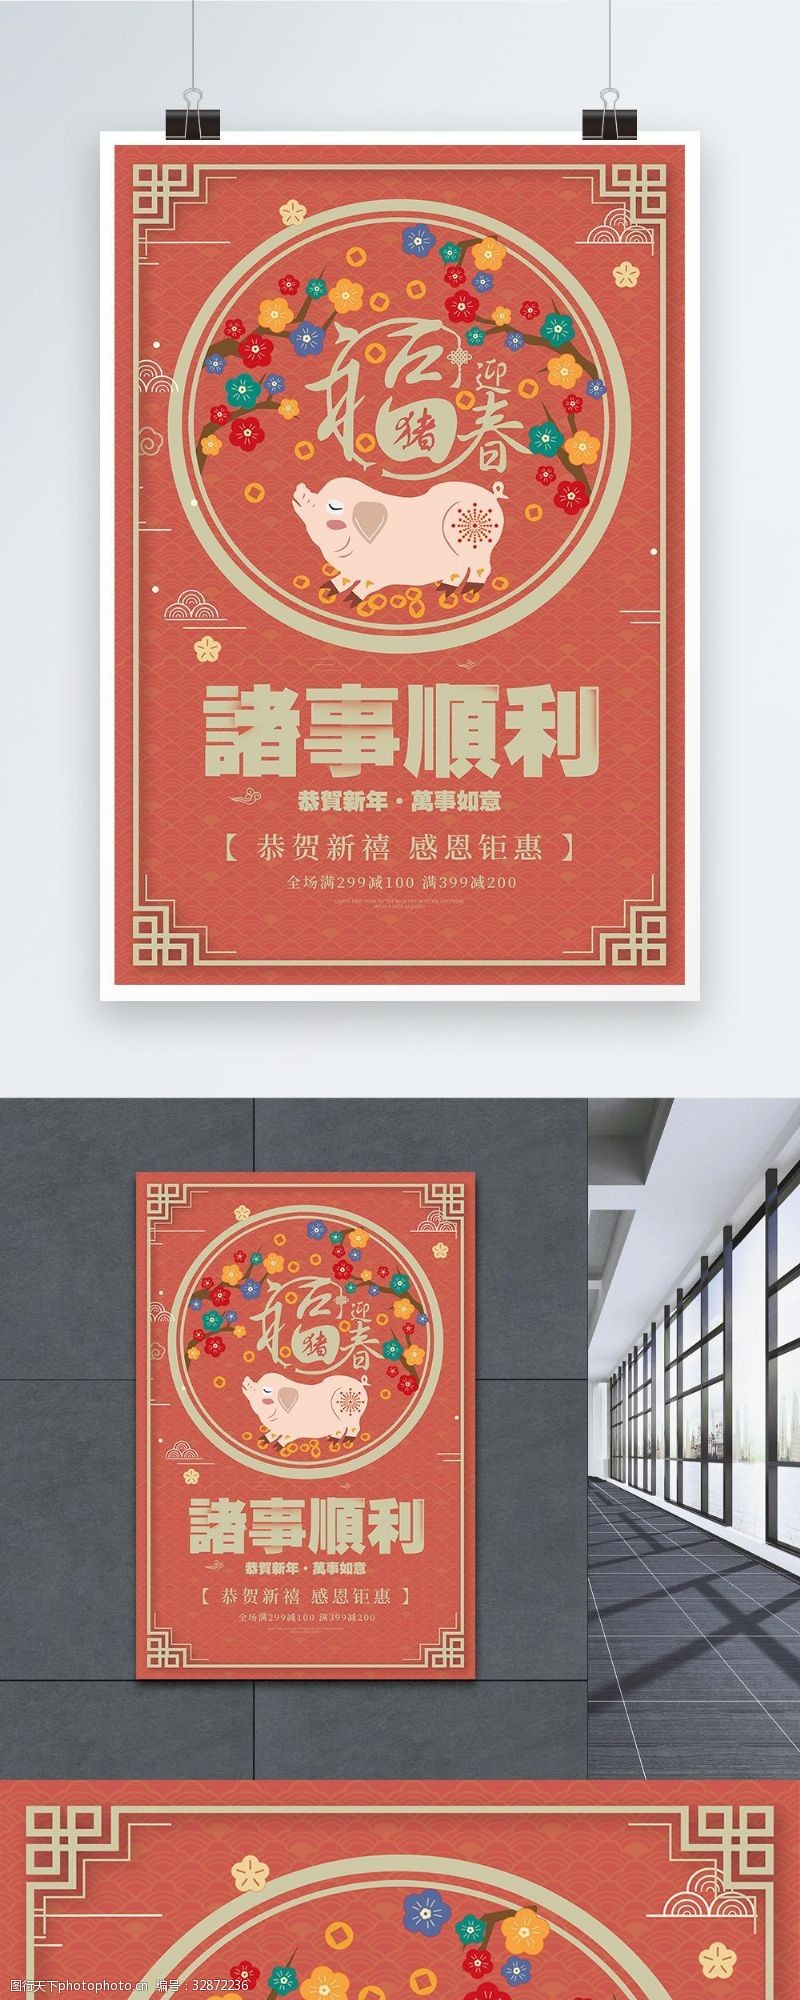 猪年祝福2019诸事顺利新年促销海报设计